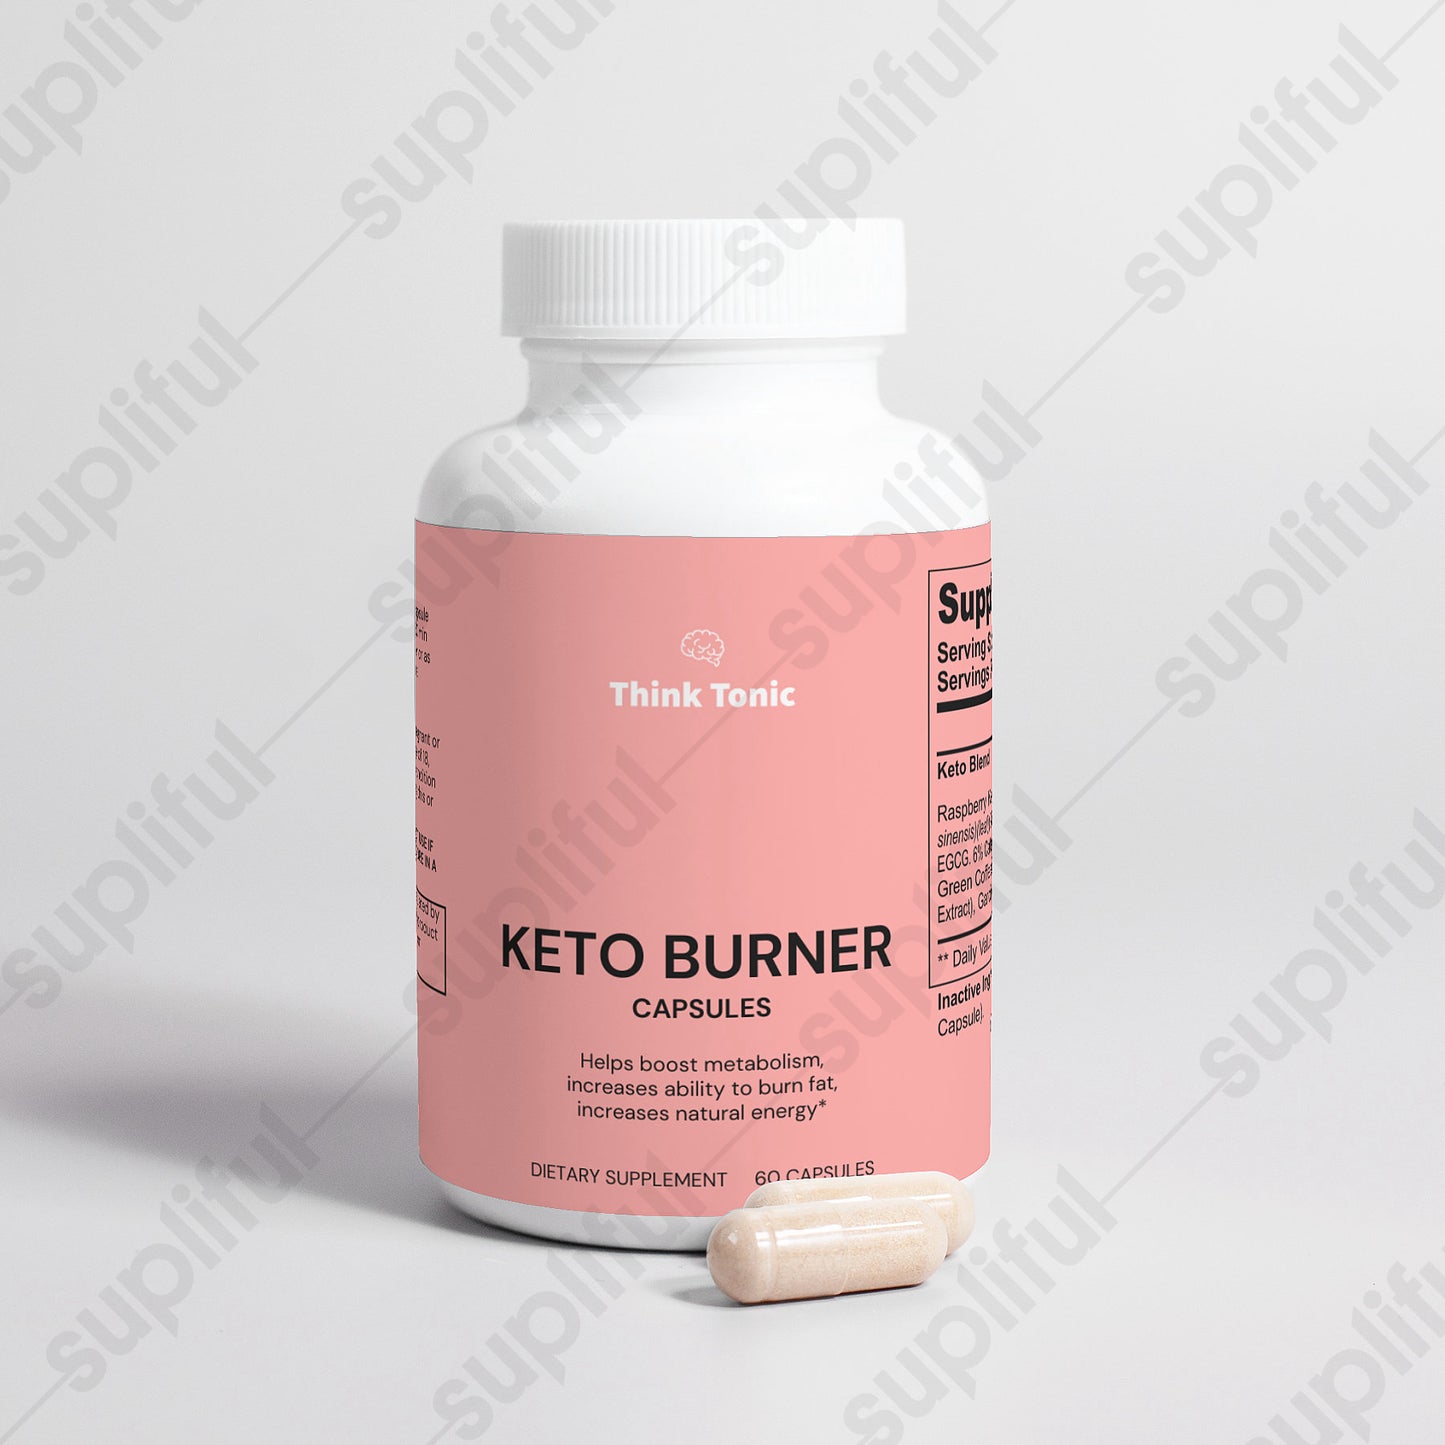 Keto Burner